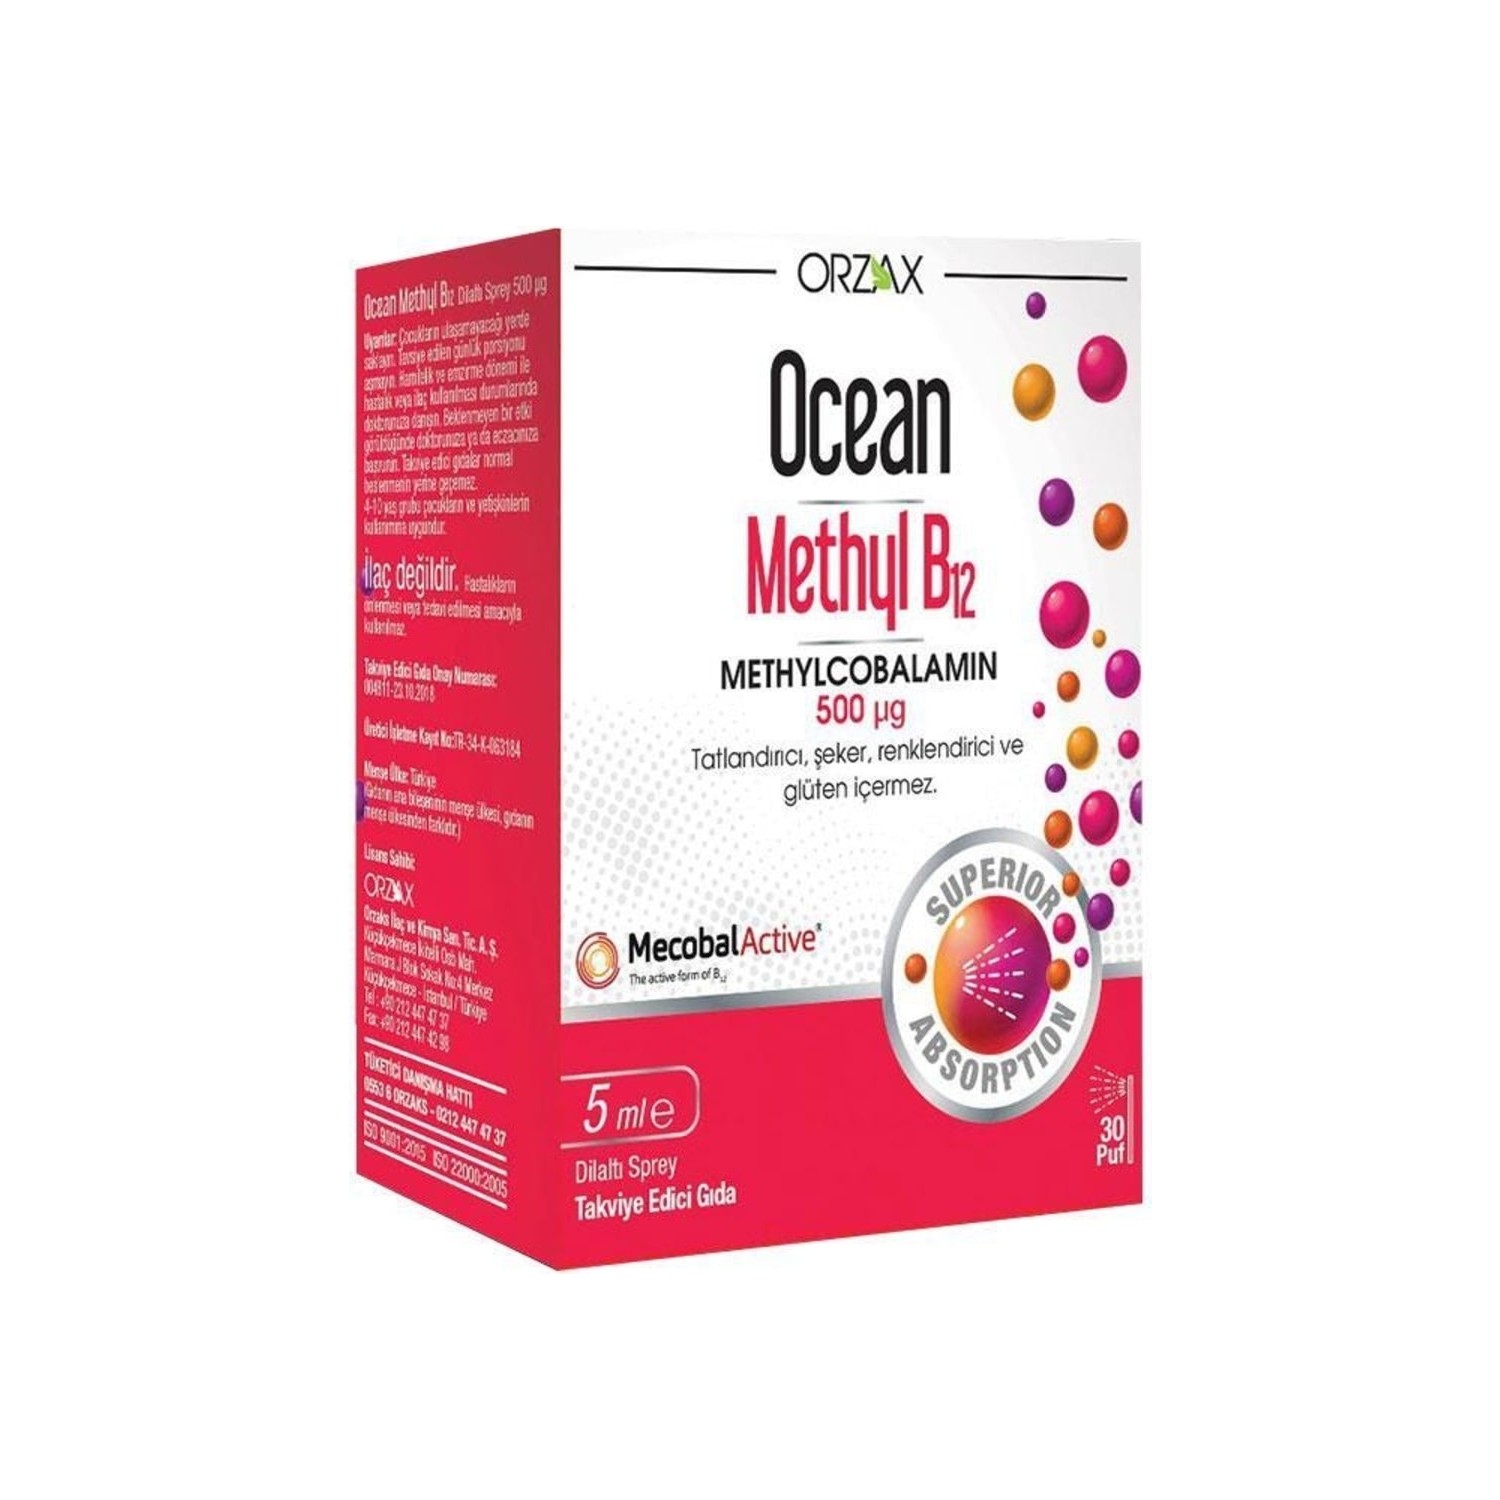 Спрей Ocean Orzax Methyl B12, 5 мл цена и фото